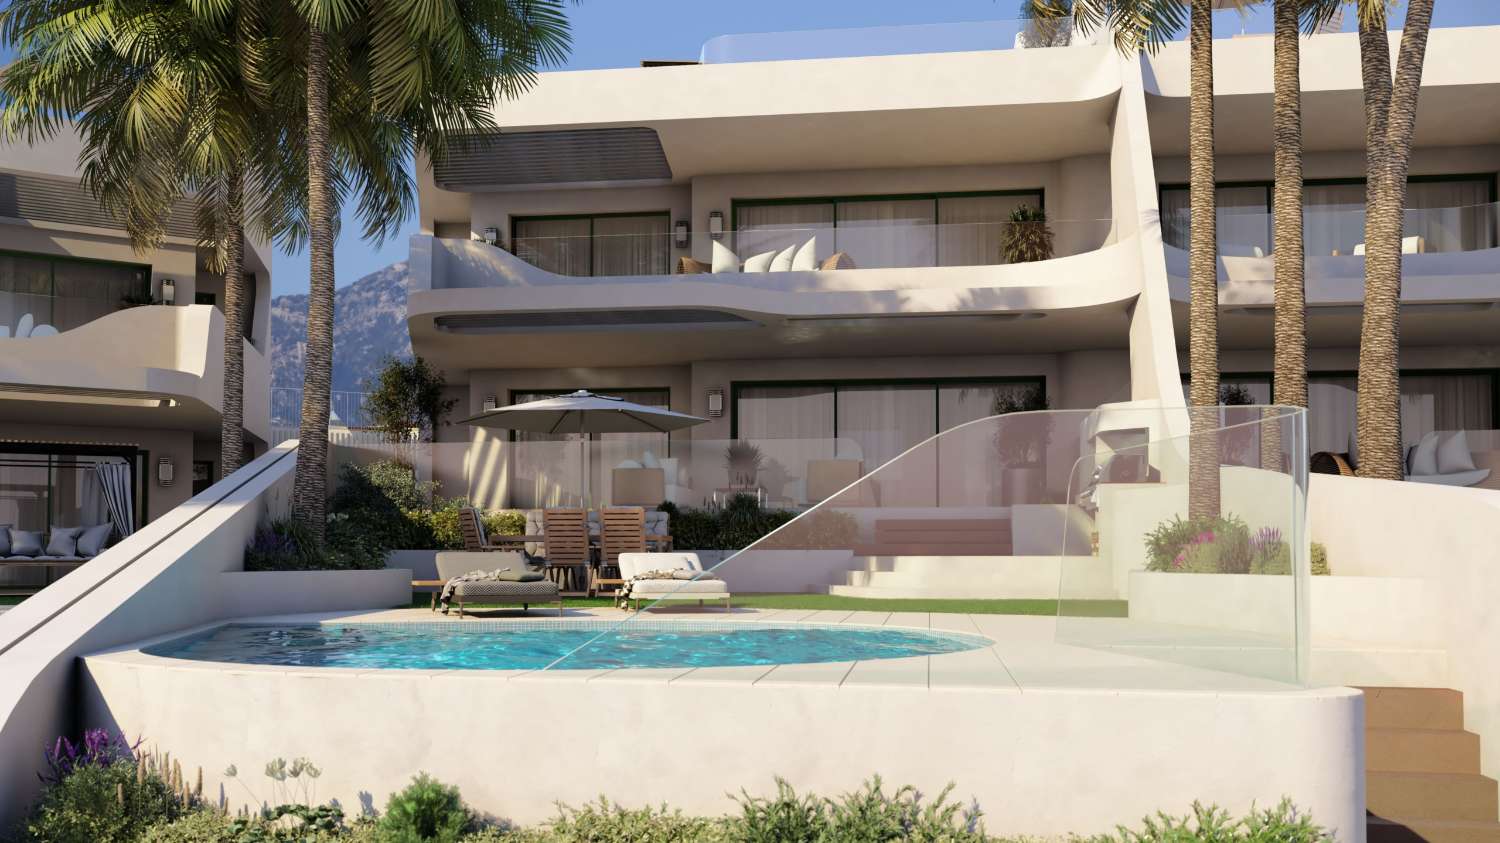 Maisons neuves à Marbella, Cabopino. Seulement 8 unités. Elles disposent toutes d’une piscine privée.